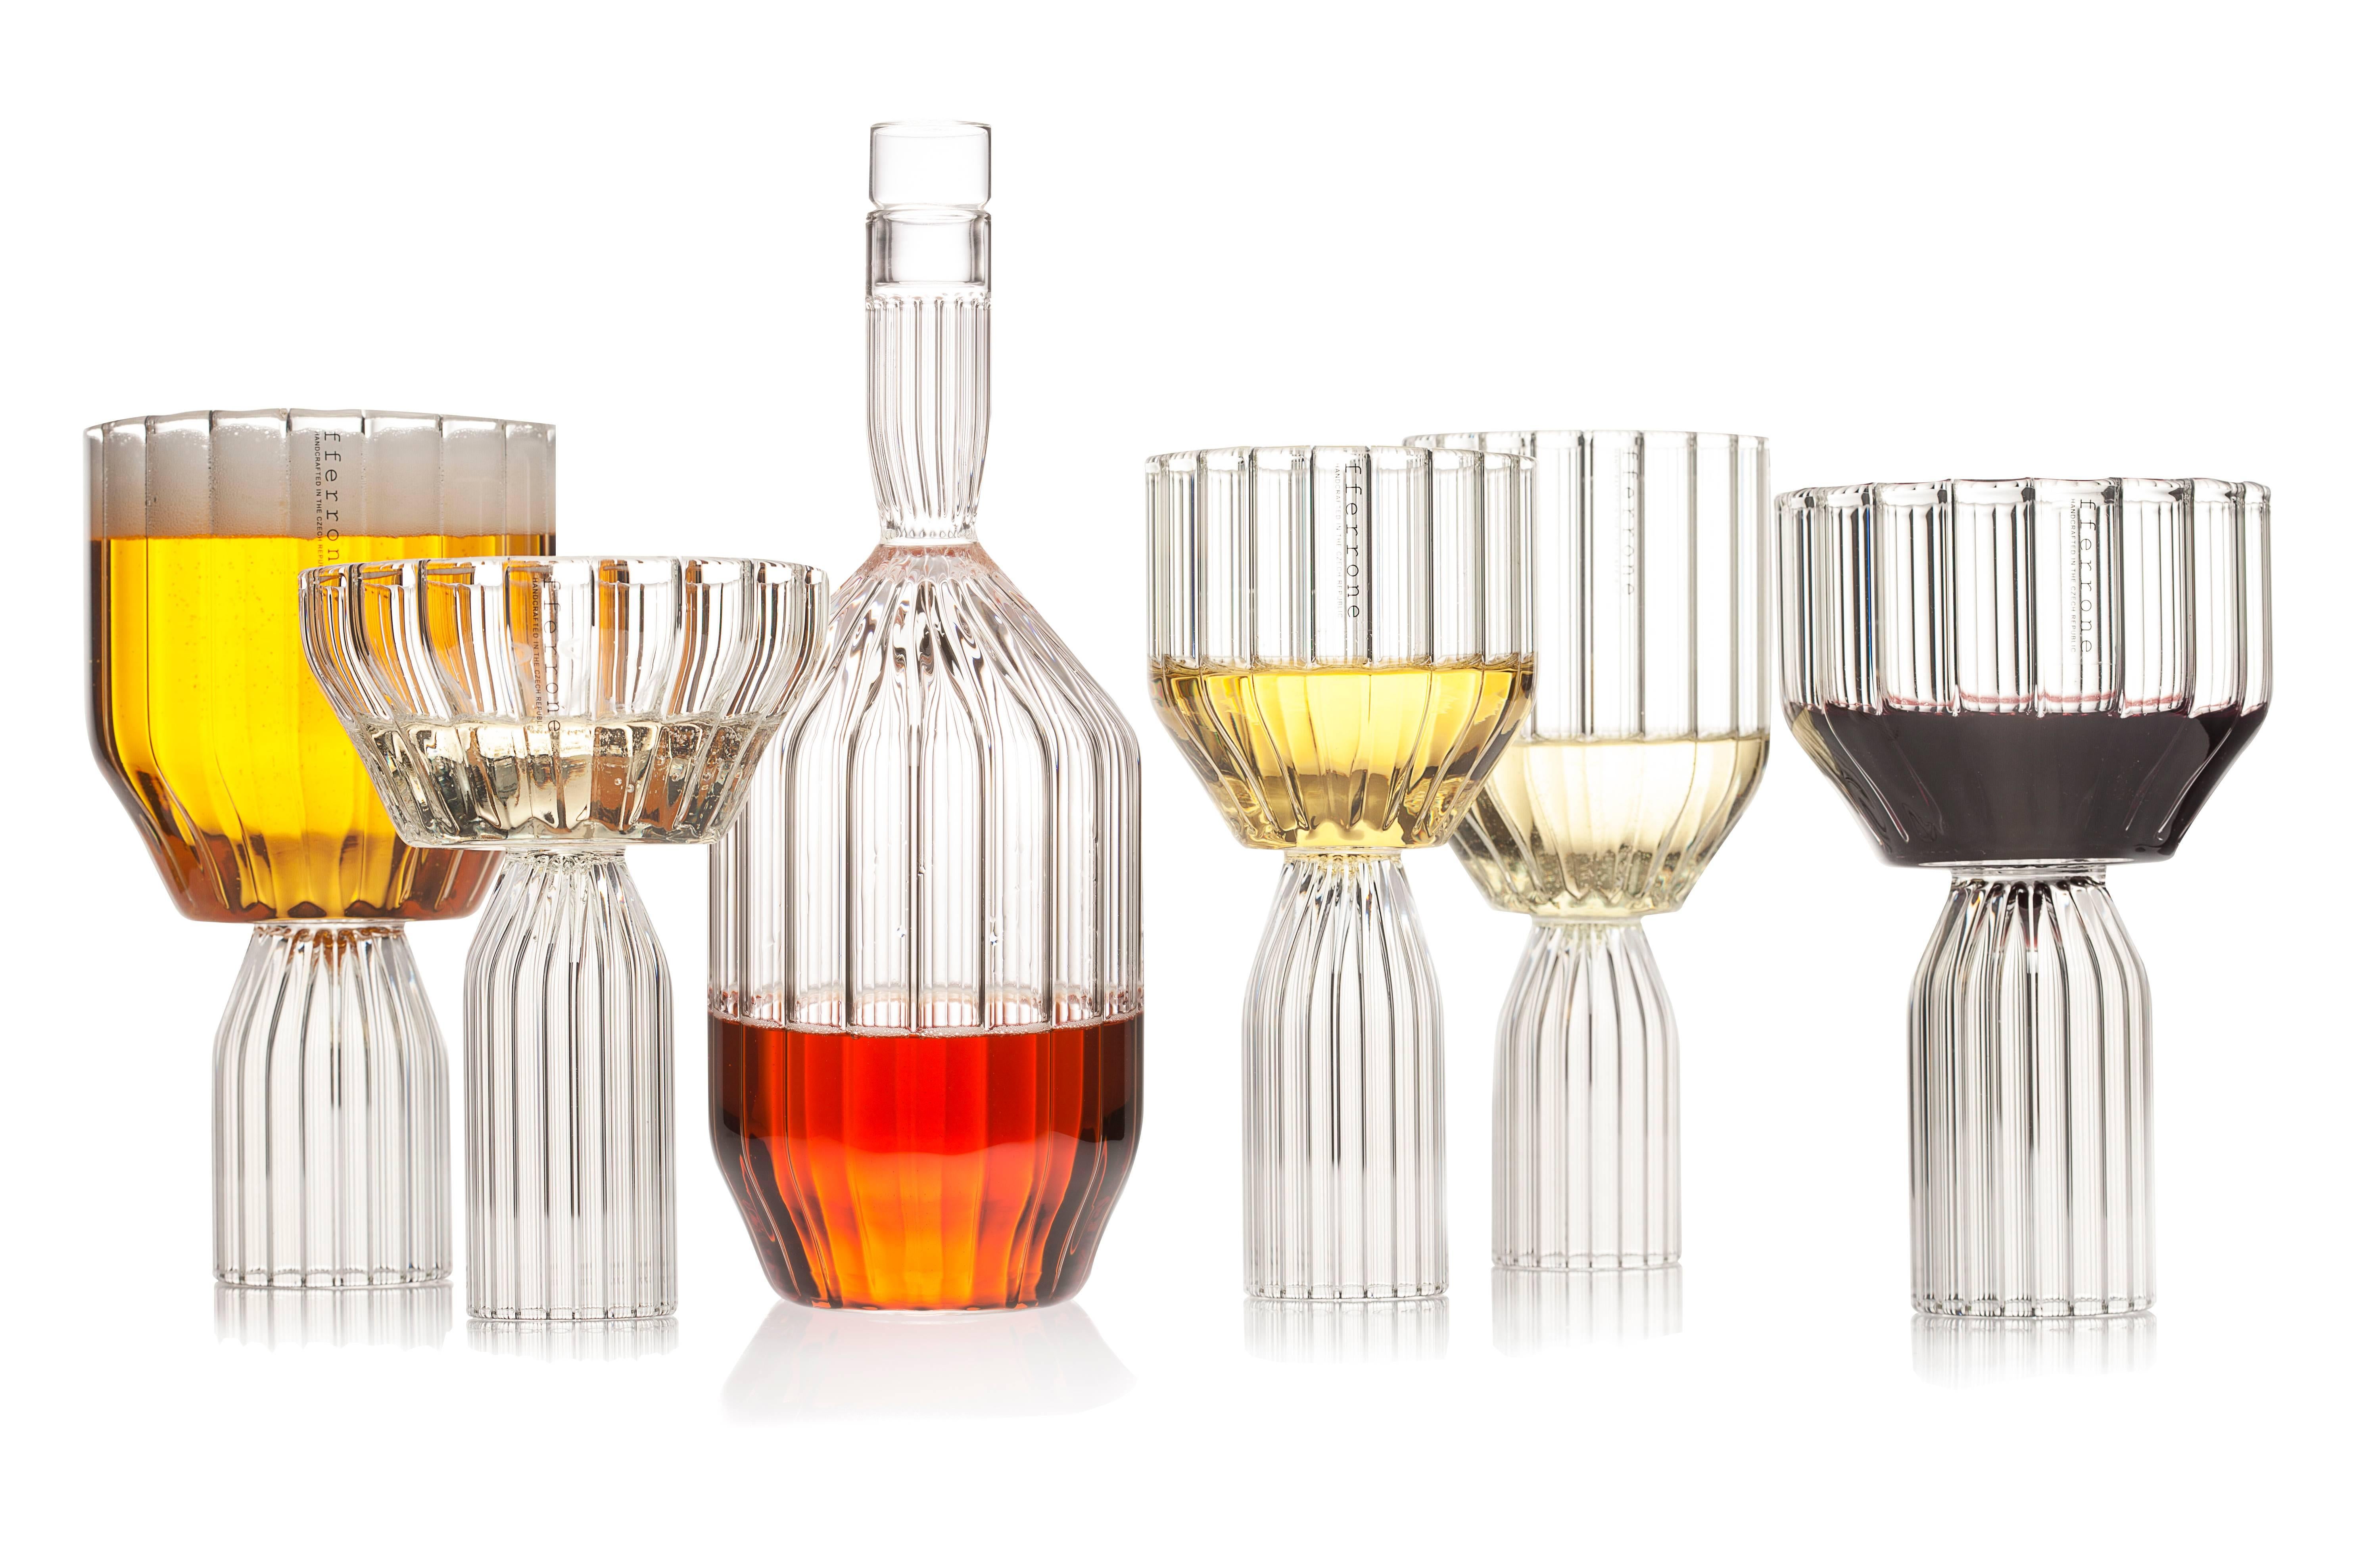 Ein Paar tschechische zeitgenössische Glas handgefertigt ist die perfekte große Kelch Wein oder Cocktail-Glas für Getränke. Hervorragend geeignet für alle Getränke und Wassergläser.

Die Kollektion Margot ist eine moderne Interpretation des